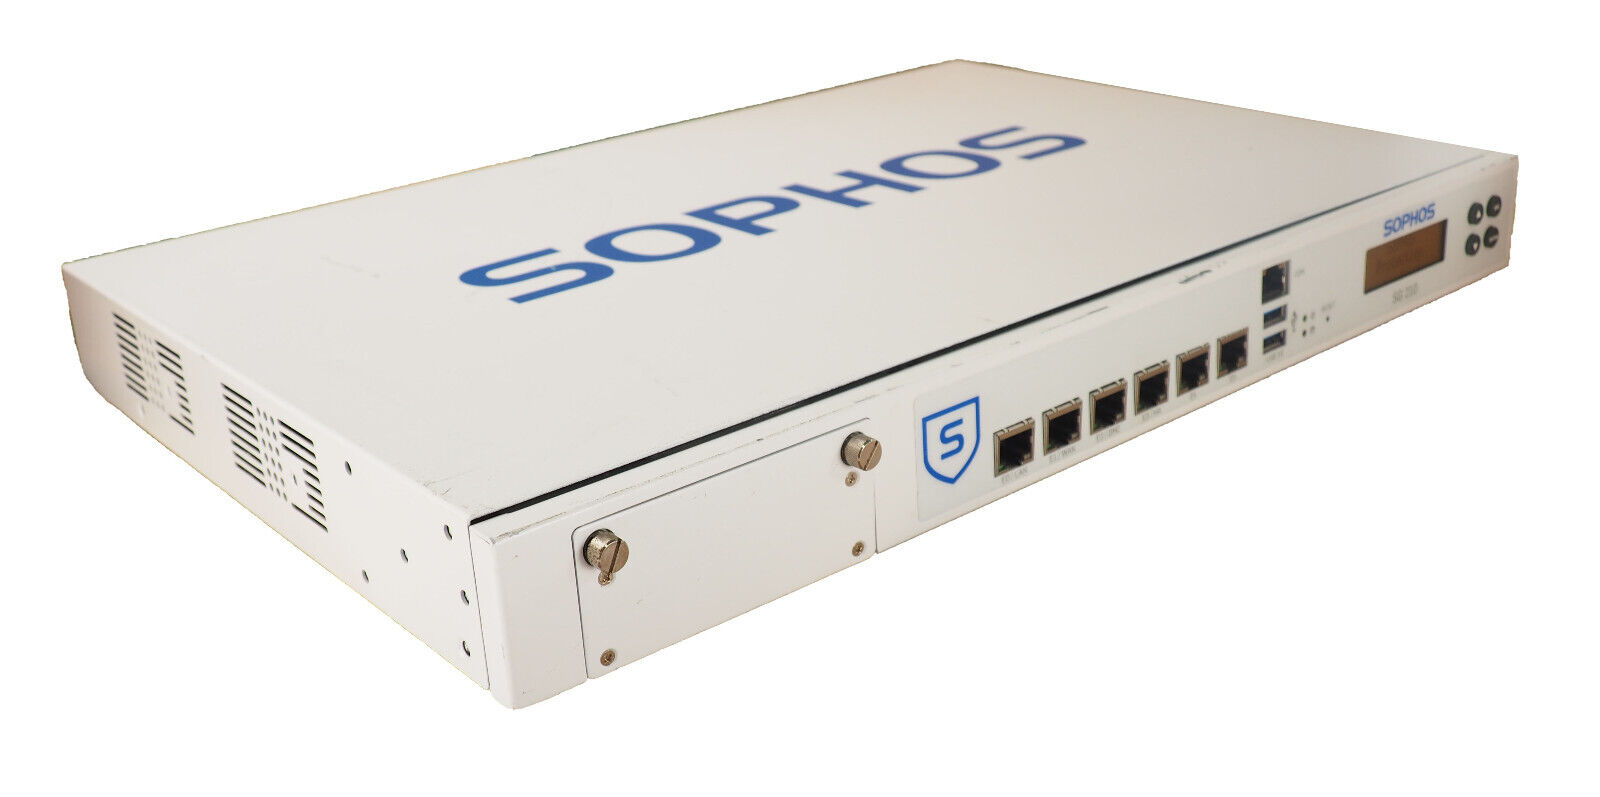 SOPHOS SG 210 v2  PFsense Firewall with 120GB Intel SSD 8GB DDR3 